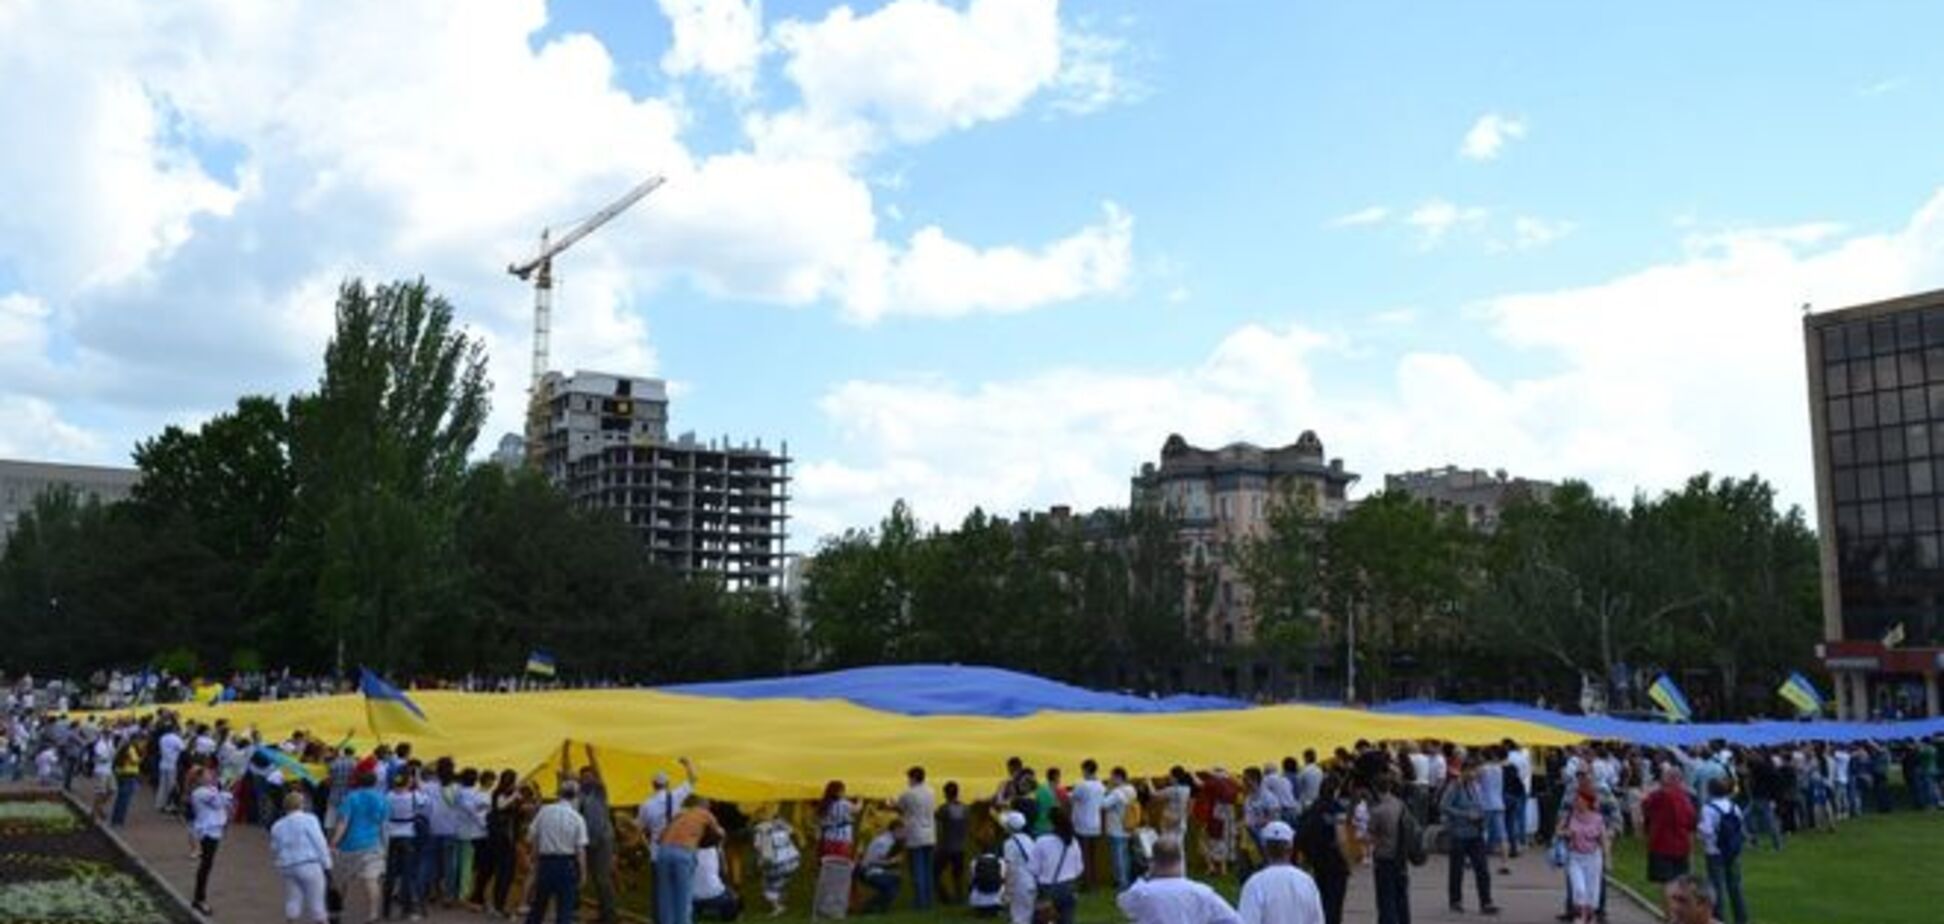 Николаевцы маршировали в вышиванках и развернули огромный флаг Украины